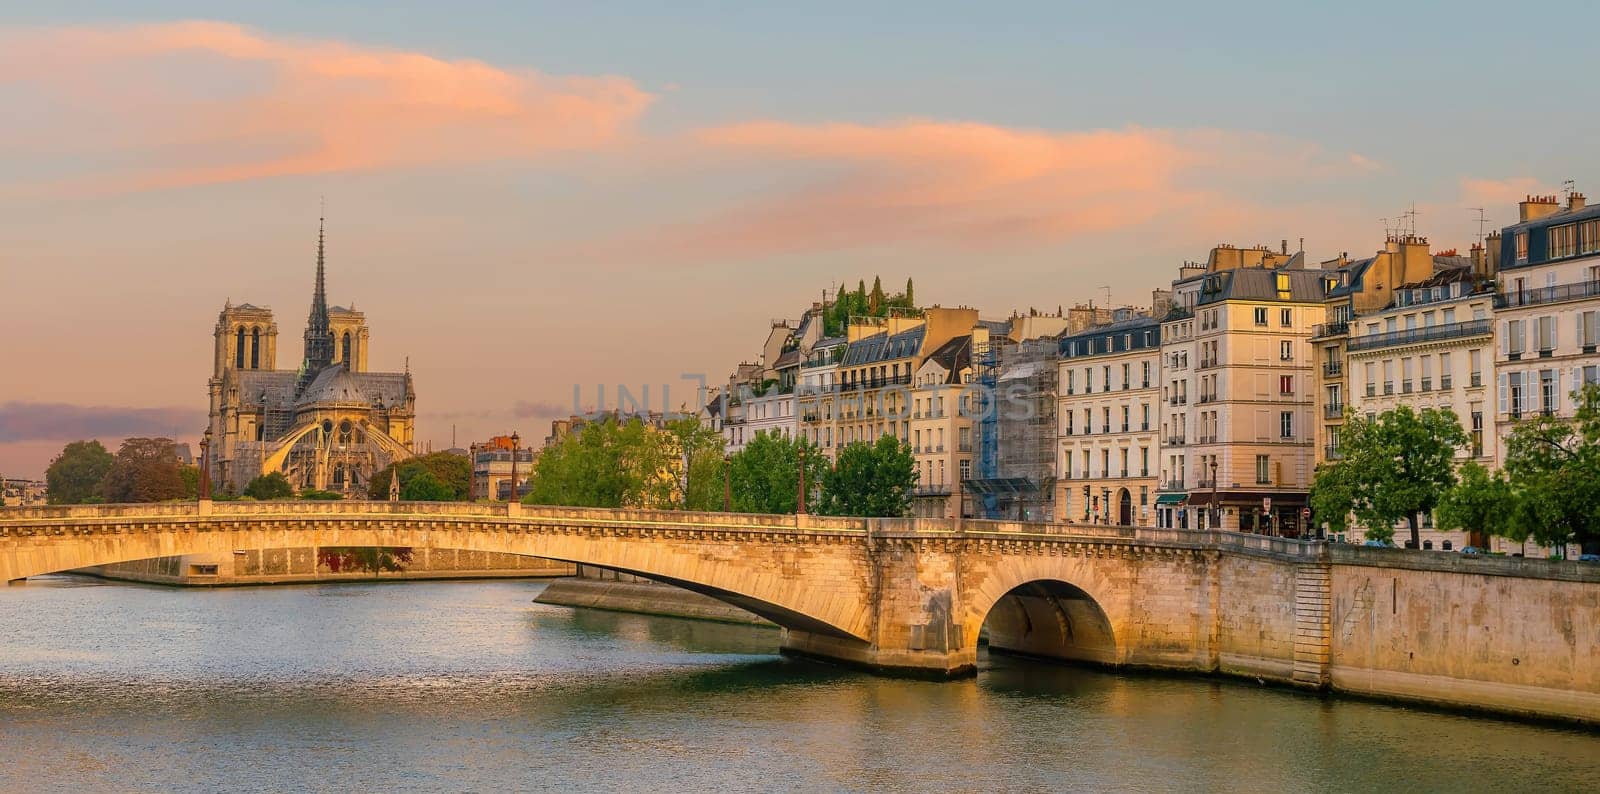 Paris city skyline with Notre Dame de Paris cathedra, cityscape of France by f11photo